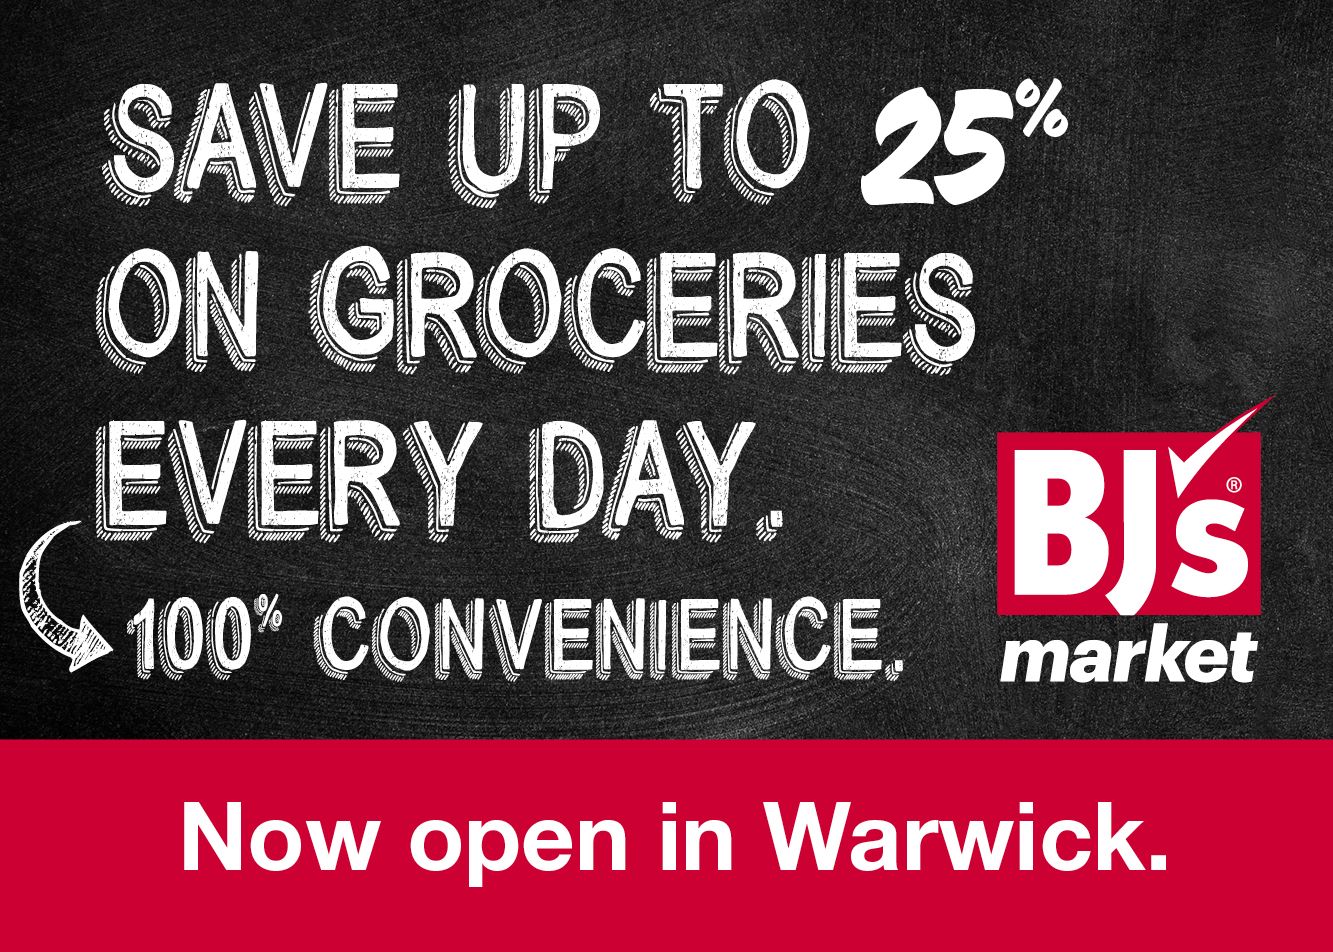 BJs Market Now Open in Warwick